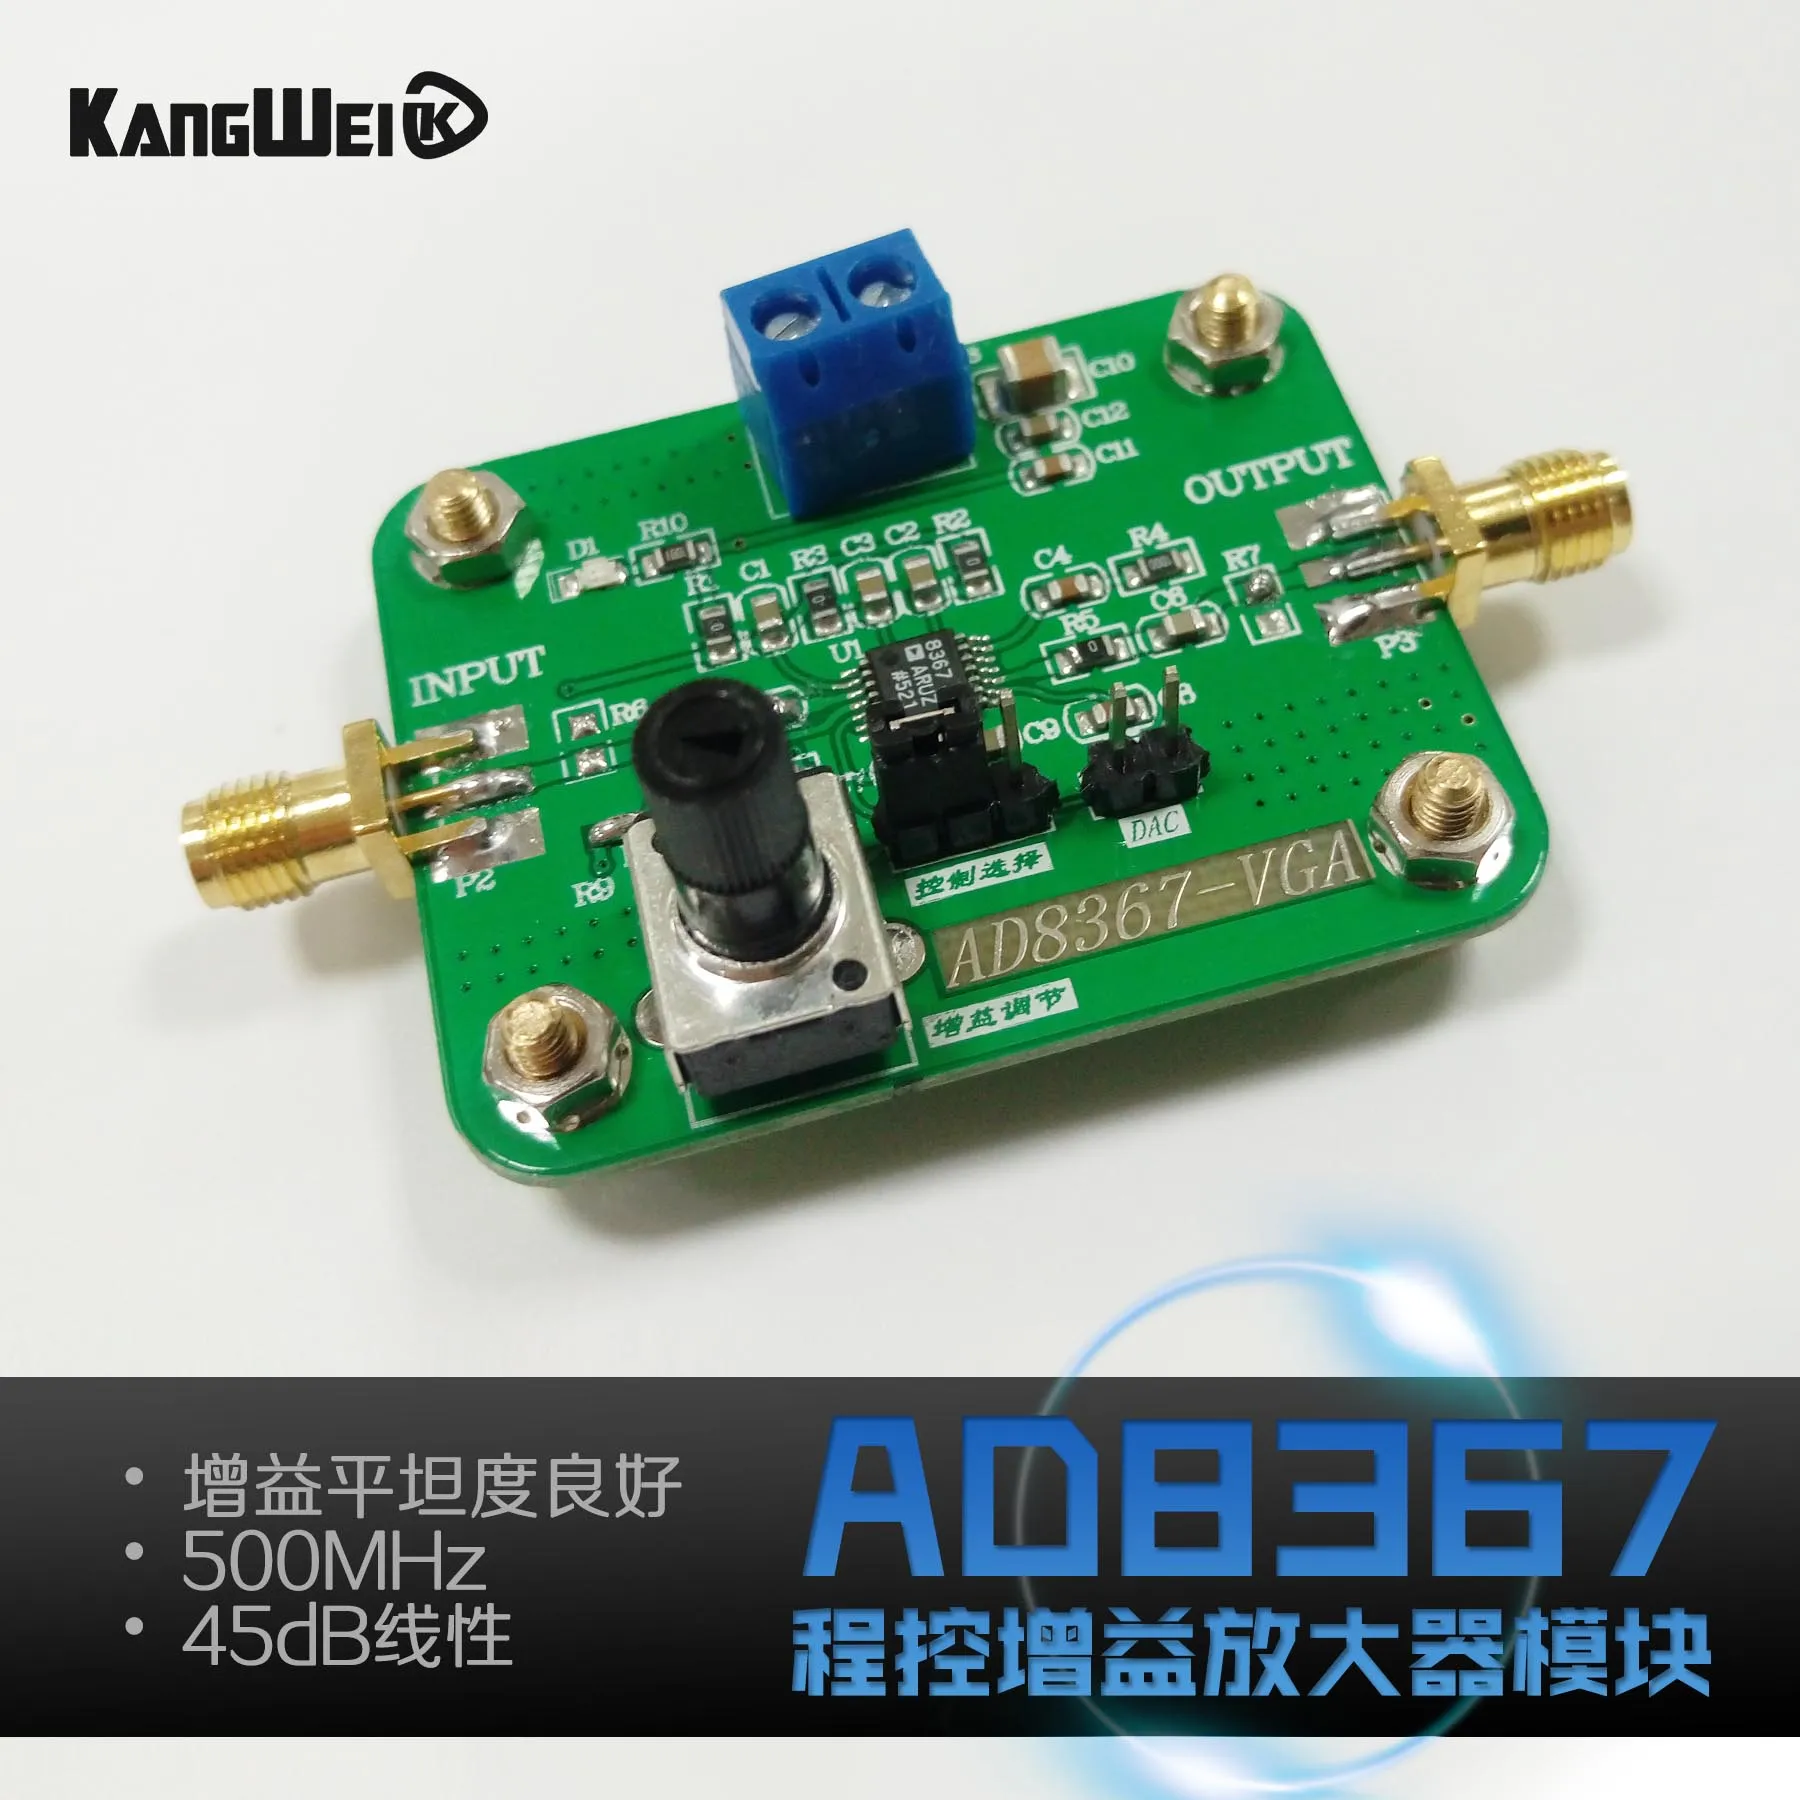 AD8367 модуль, переменная усиления, 500 мГц измерения пропускной способности, 32dB коэффициентом усиления